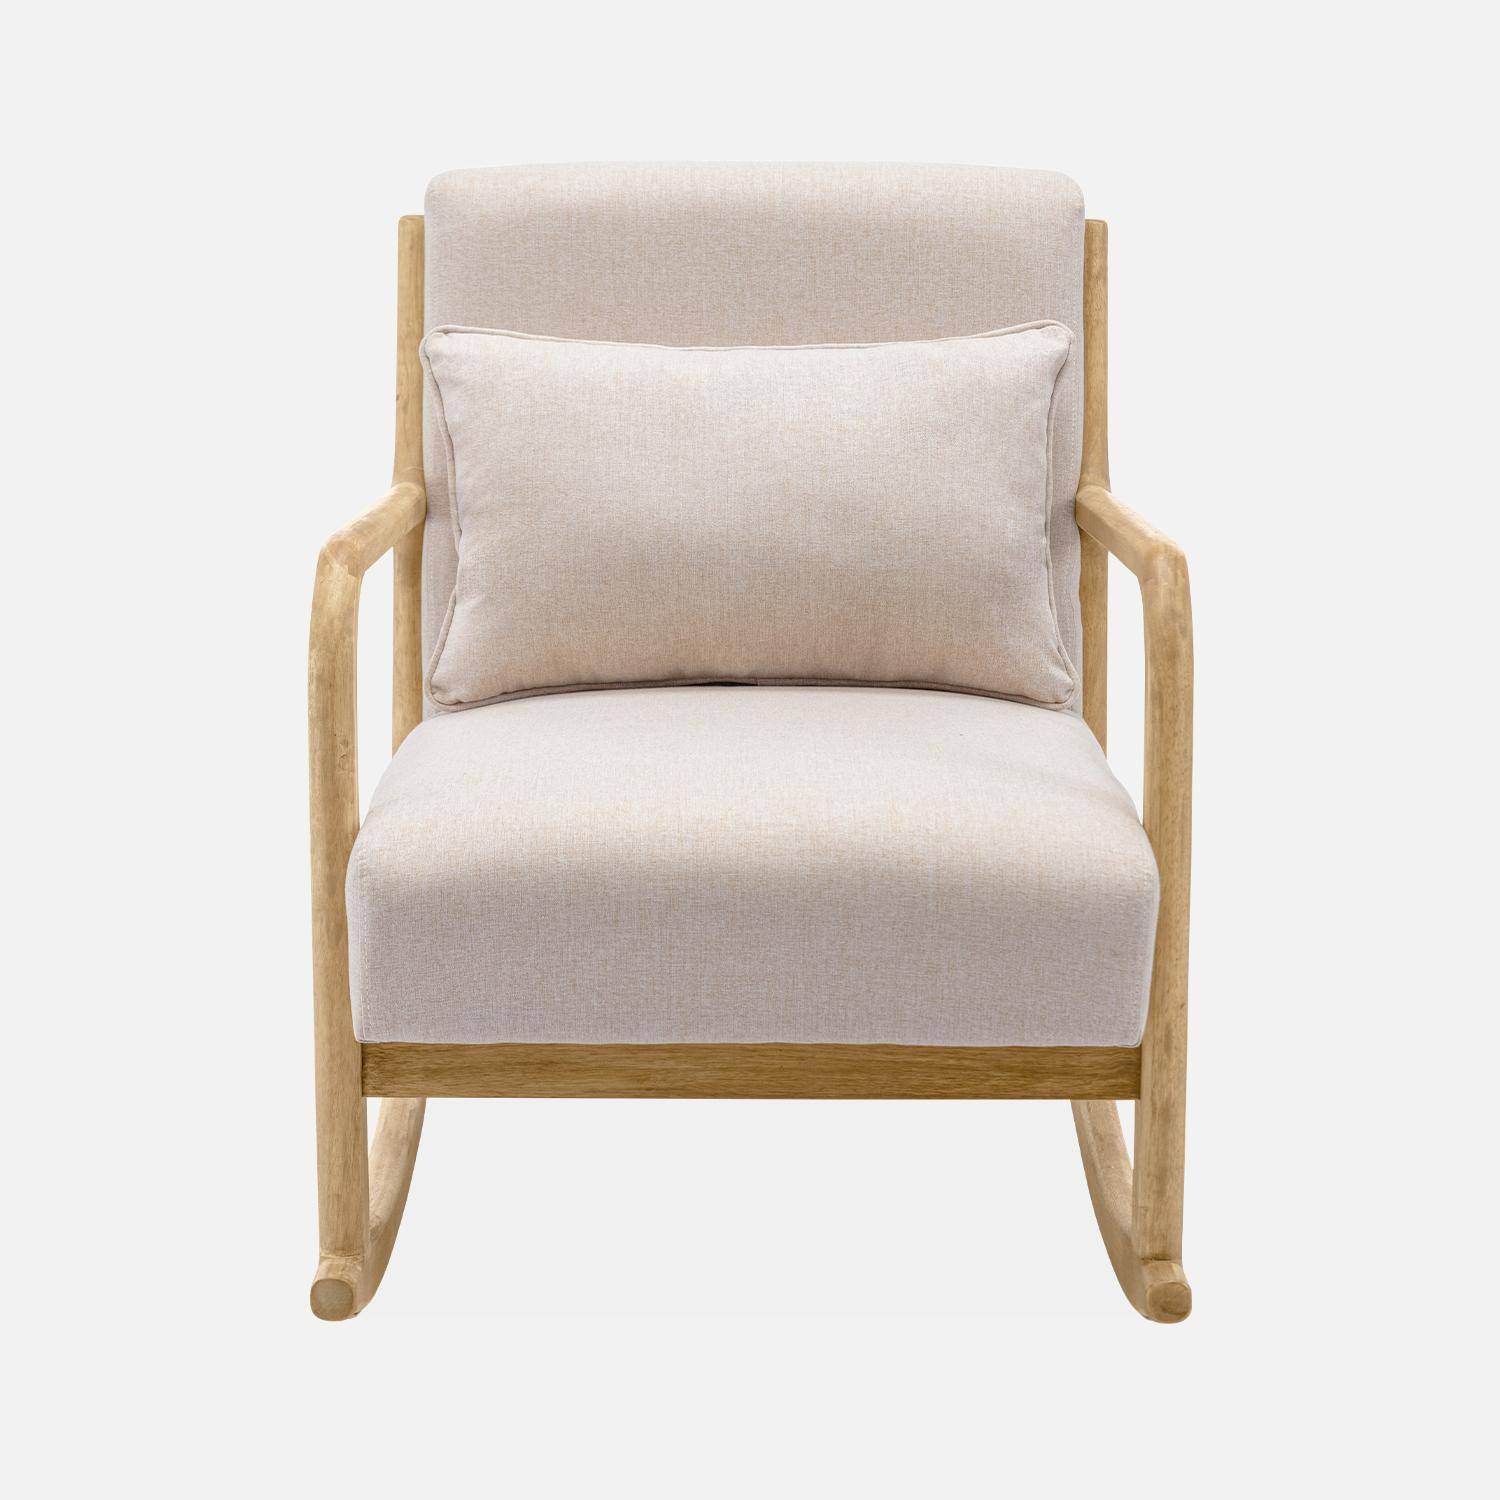 Cadeira de baloiço de design em madeira e tecido, 1 lugar, cadeira de baloiço escandinava, bege,sweeek,Photo4